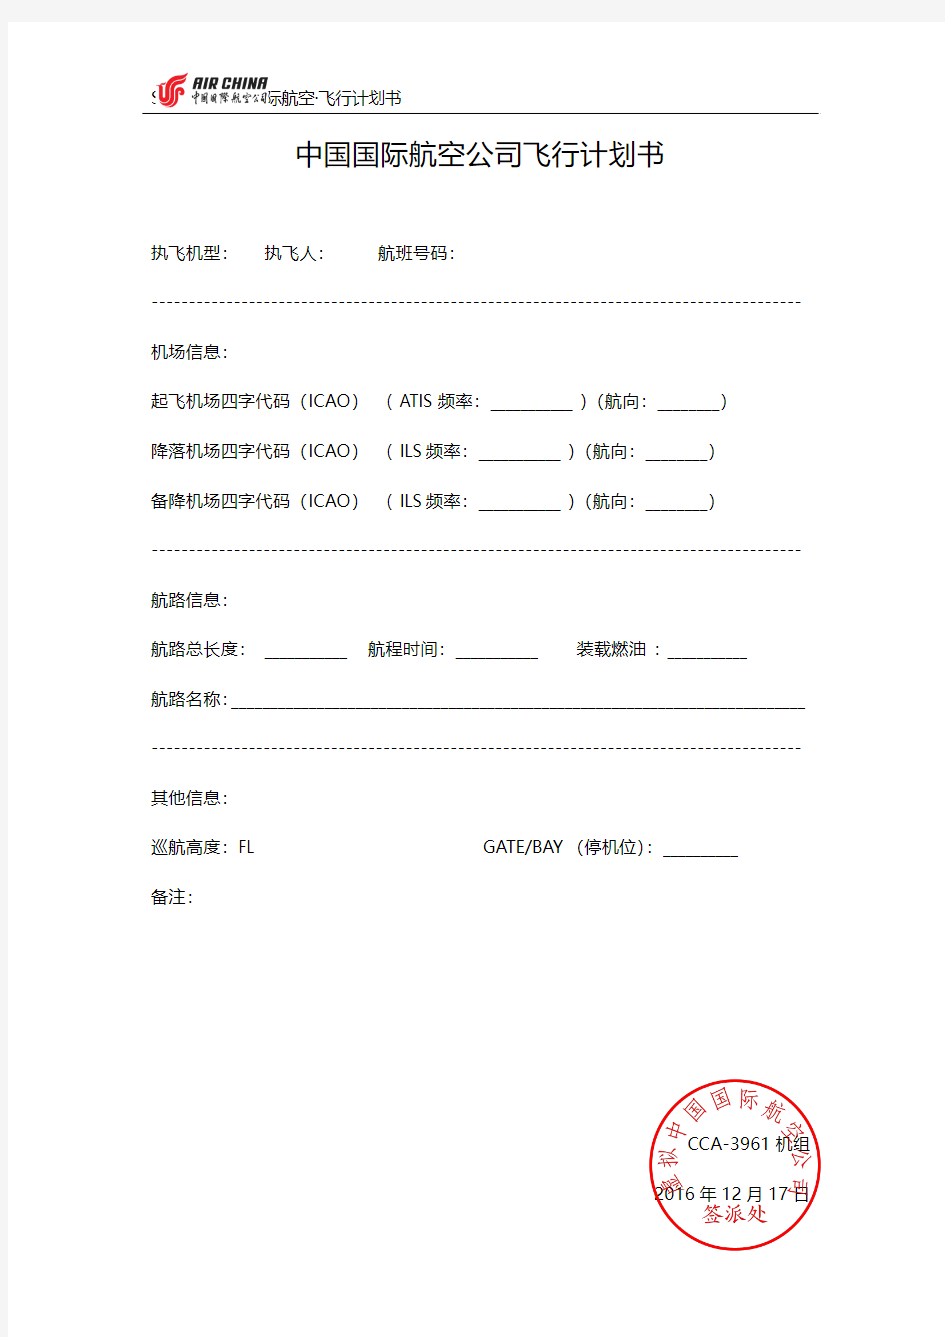 虚拟中国国际航空公司飞行计划书